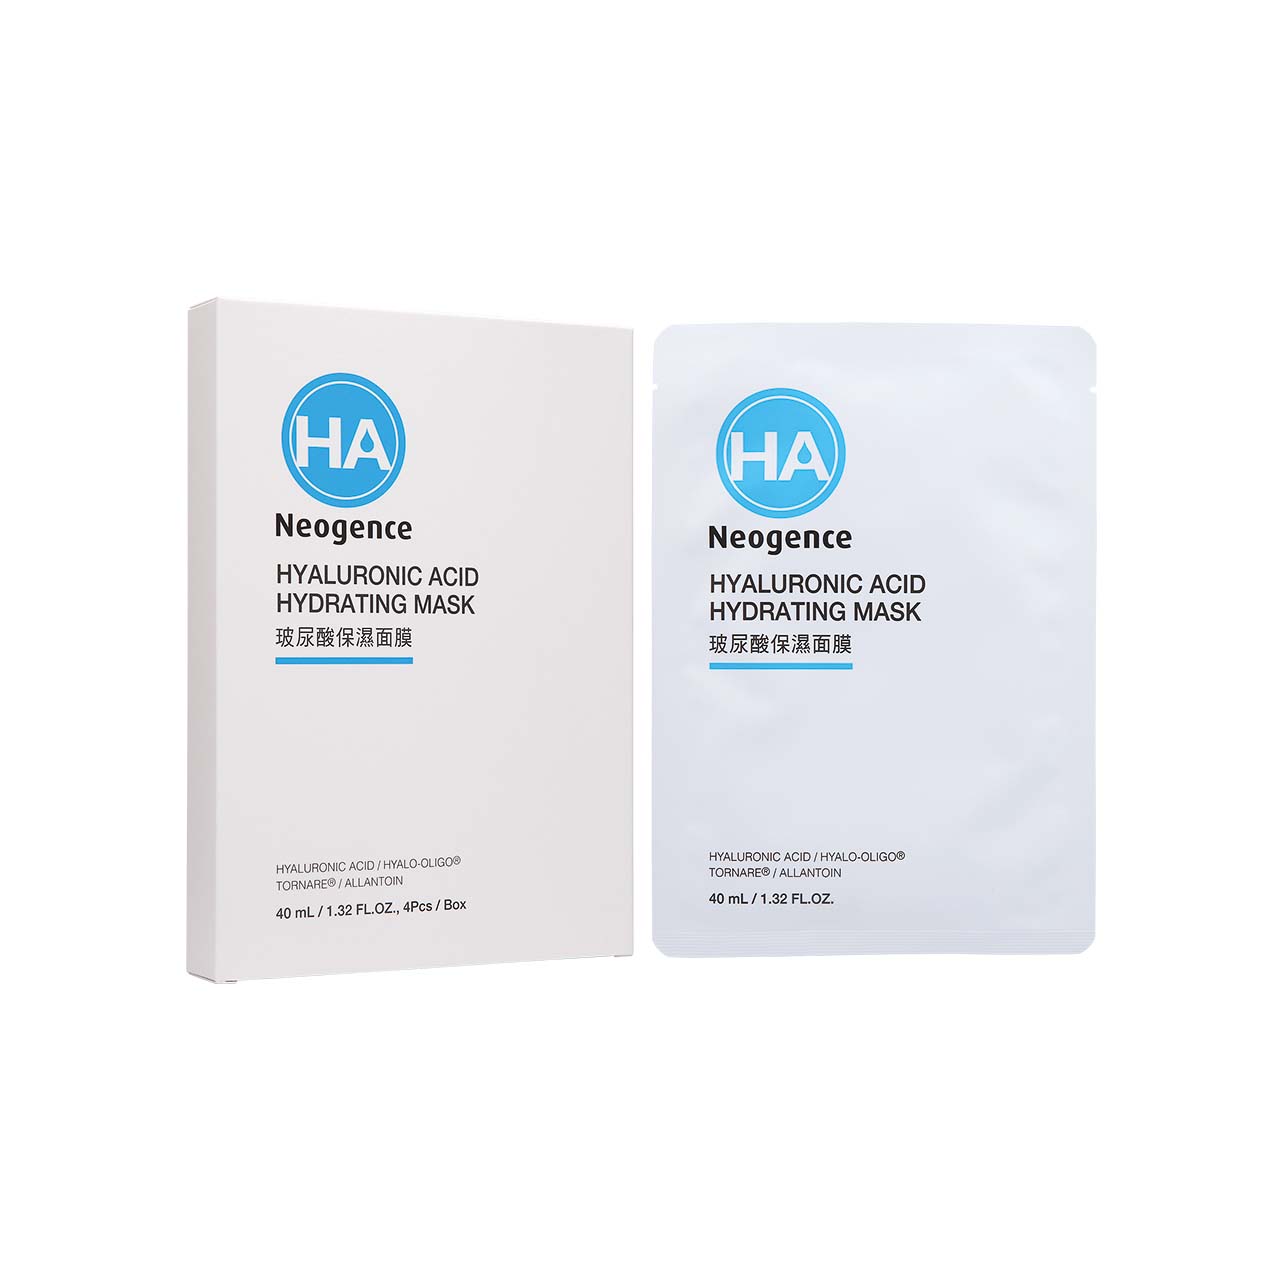 Neogence HA Hyaluronic Acid Hydrating Mask 4pcs | Sasa Global eShop